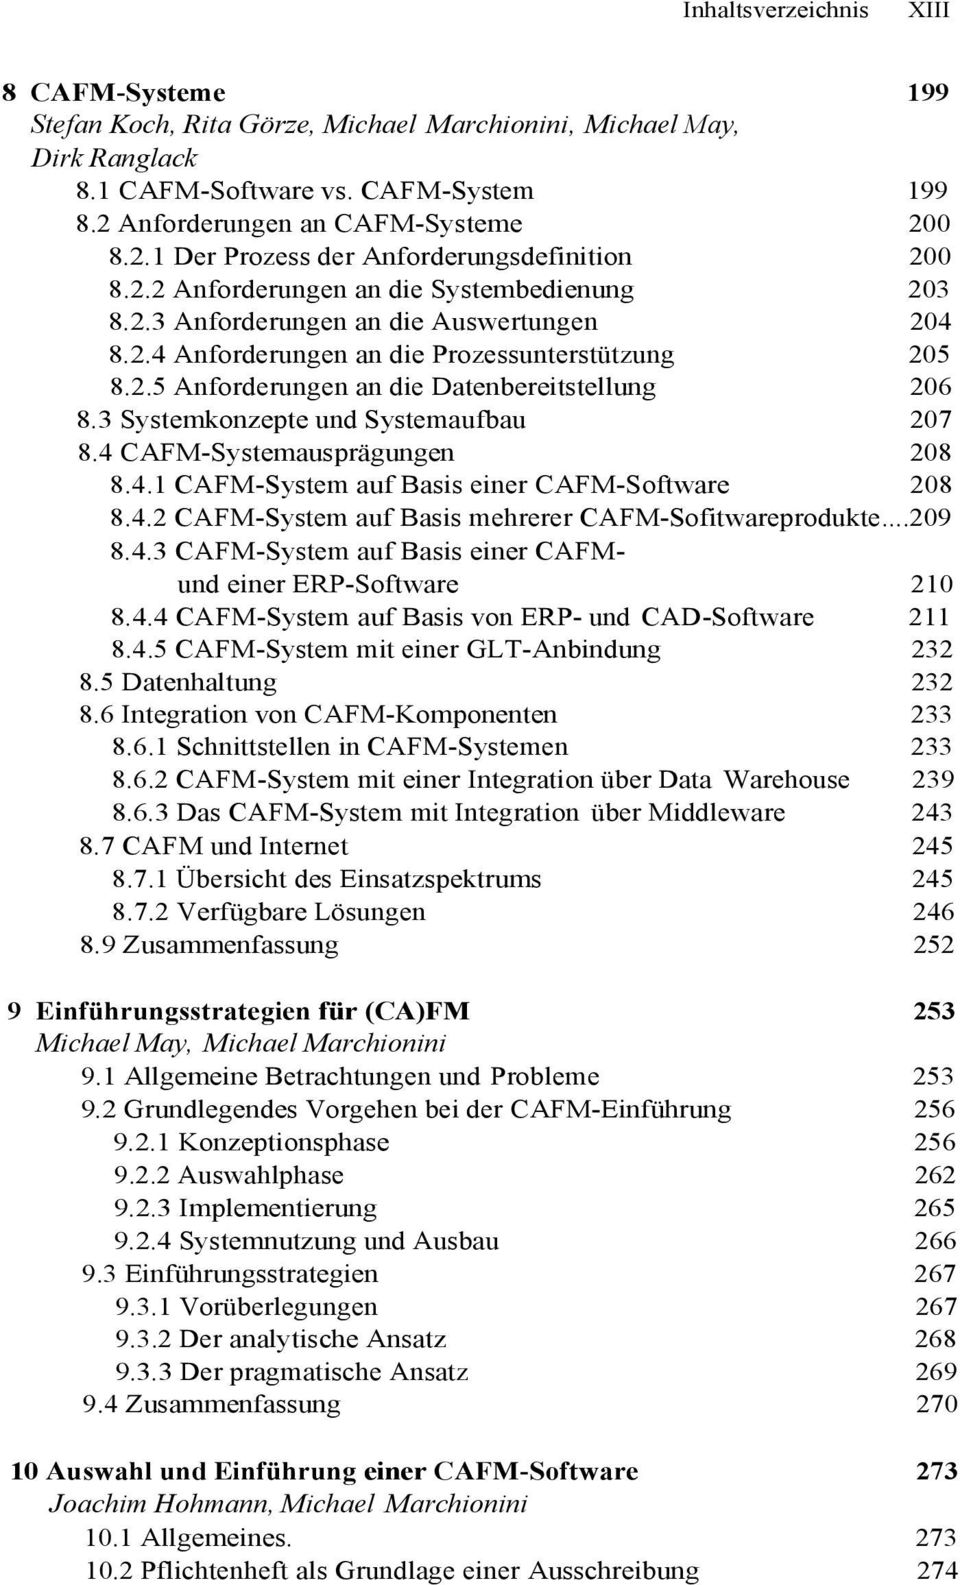 2.5 Anforderungen an die Datenbereitstellung 206 8.3 Systemkonzepte und Systemaufbau 207 8.4 CAFM-Systemausprägungen 208 8.4.1 CAFM-System auf Basis einer CAFM-Software 208 8.4.2 CAFM-System auf Basis mehrerer CAFM-Sofitwareprodukte.